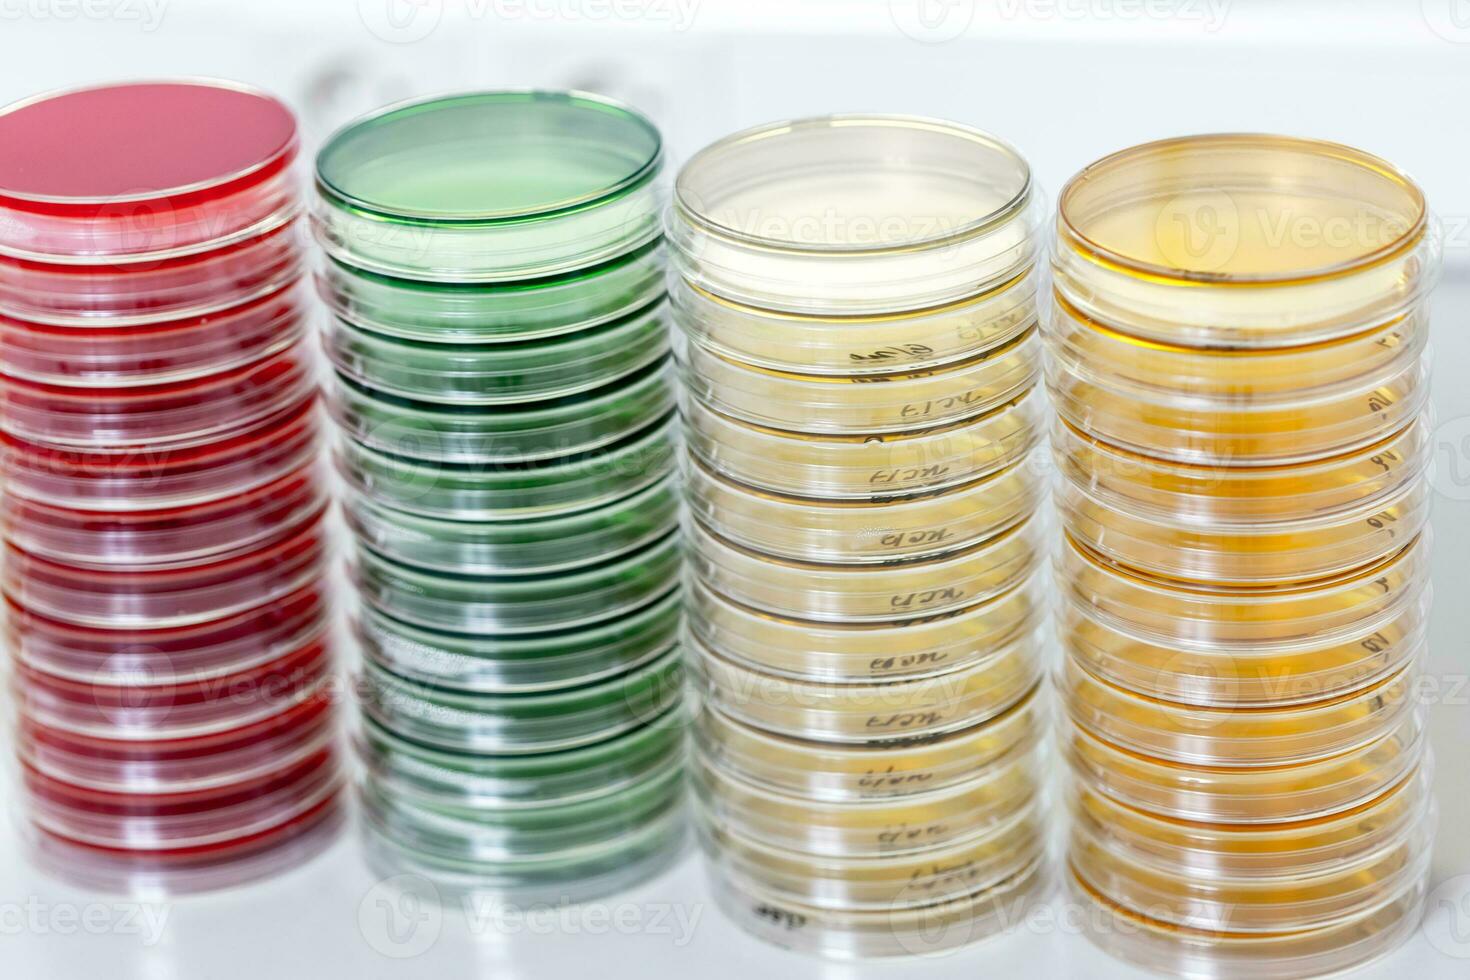 petry platos en laboratorio mesa foto